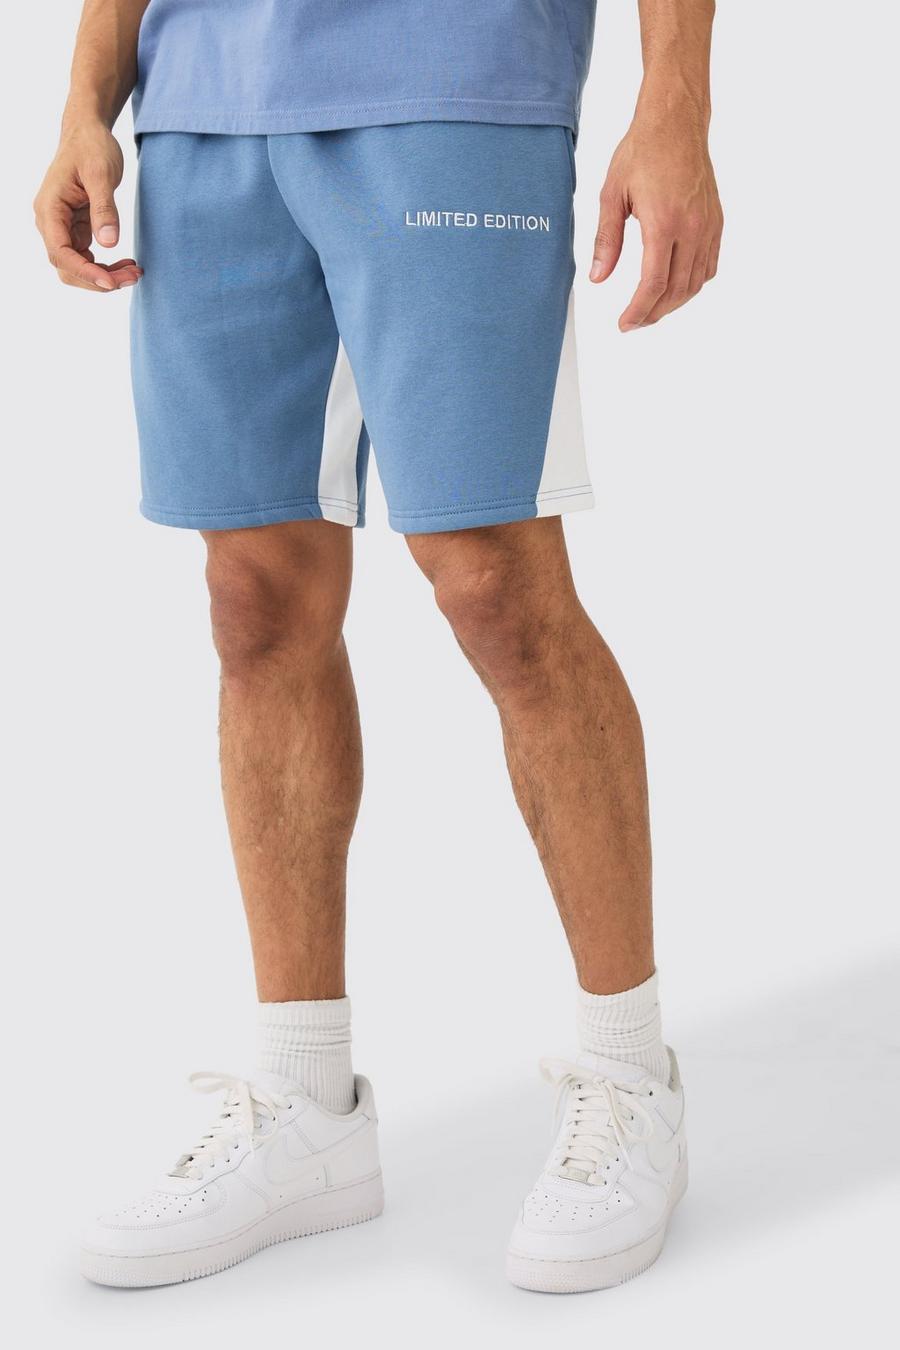 Pantalón corto holgado con refuerzo Limited Edition, Dusty blue image number 1